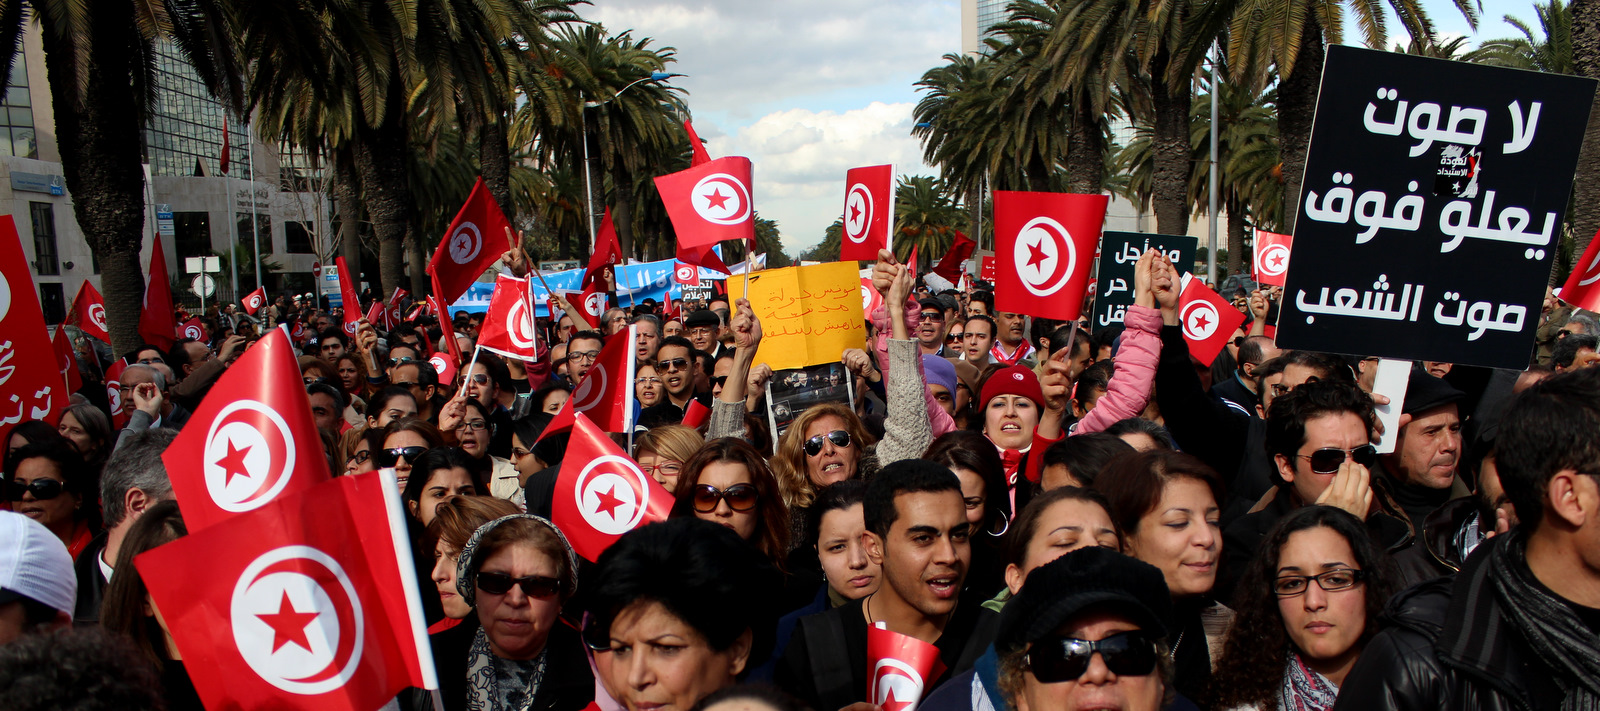 Protesters in Tunisia